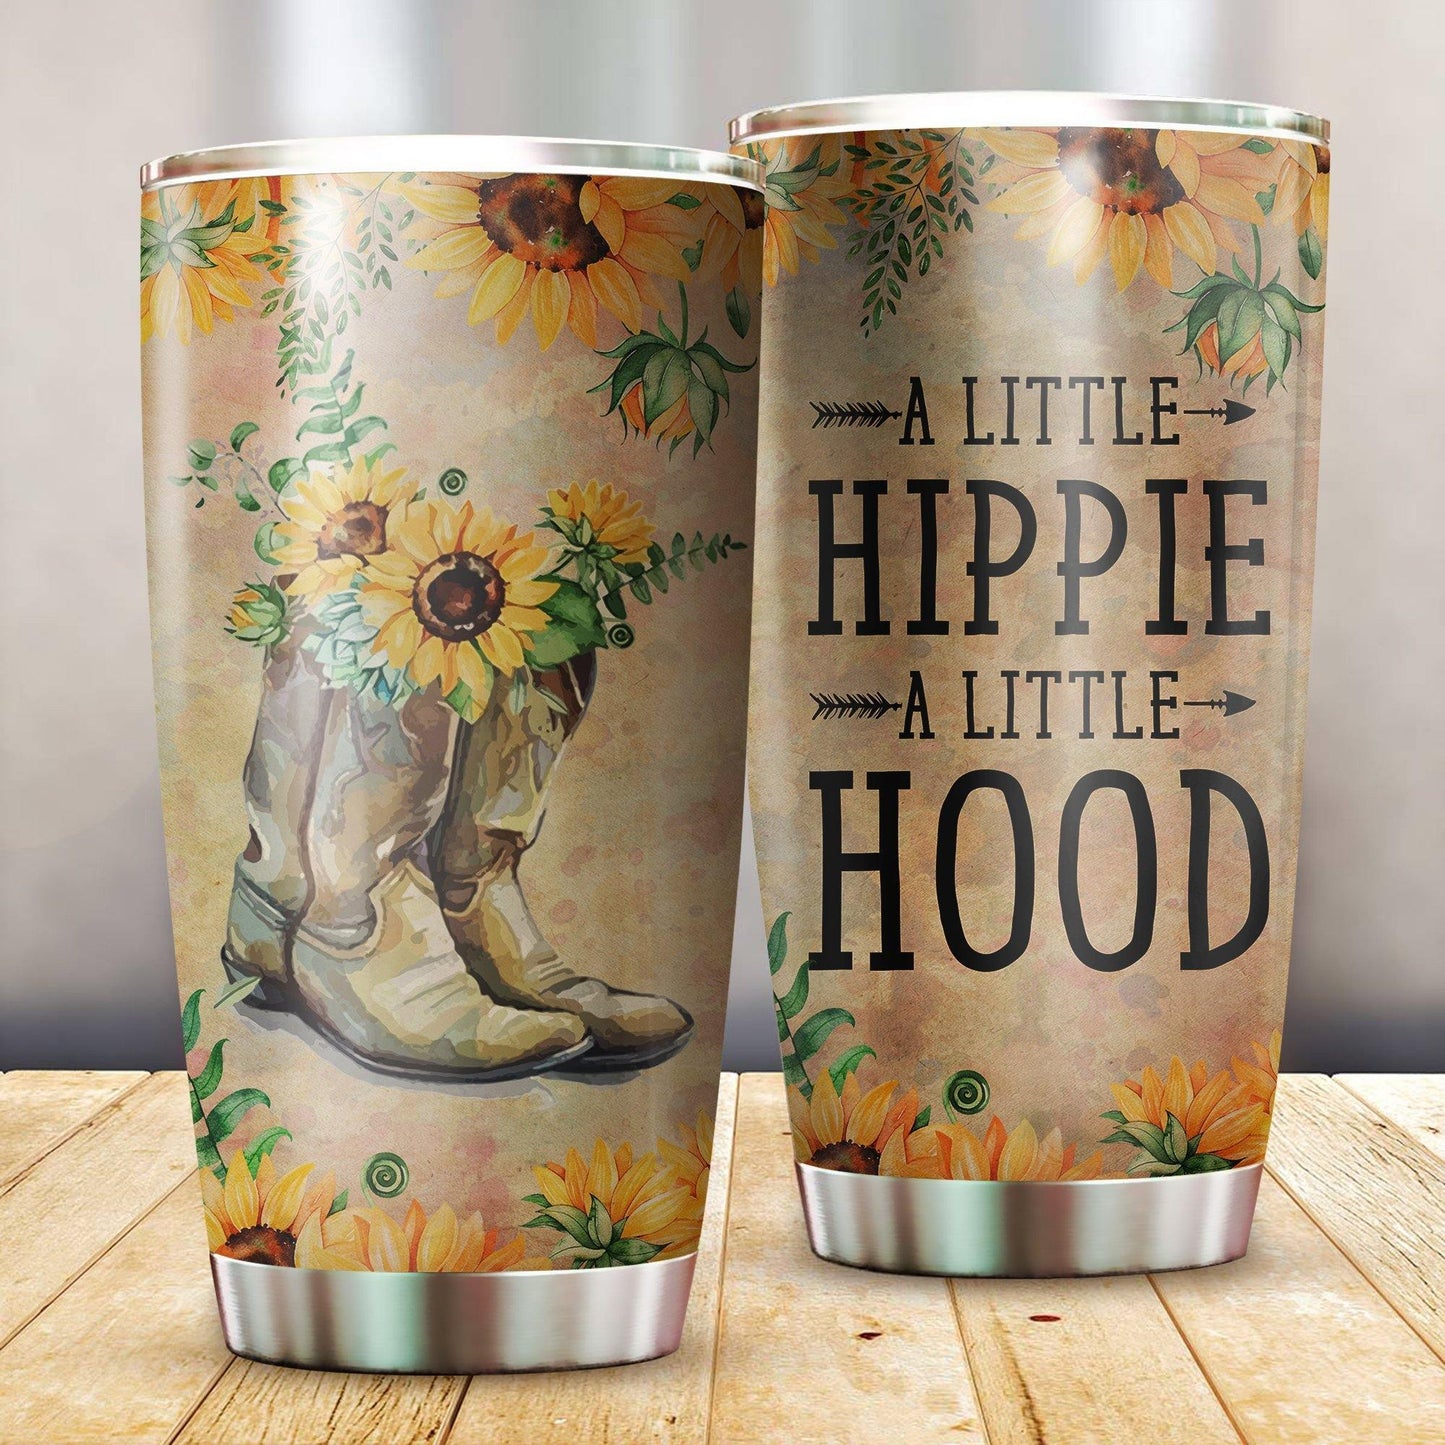  Hippie Tumbler Cup 20 Oz Vintage A Little Hippie A Little Hood Sunflower Tumbler 20 Oz